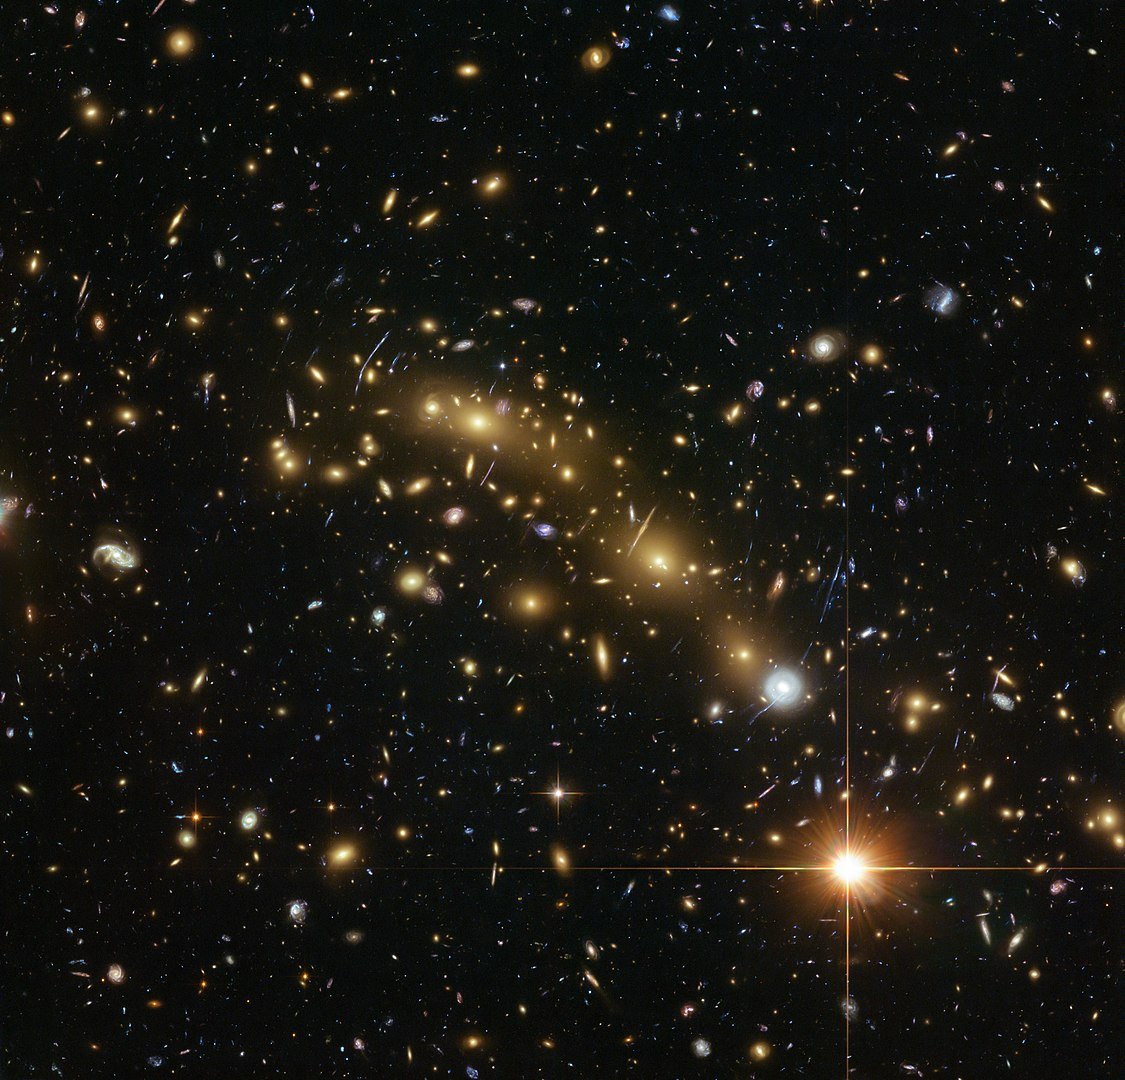  Imagen del gran cúmulo de galaxias MACS J0416.1-2403 donde vemos muchos arcos y formas alargadas en la parte central en color amarillo que se forman por el efecto de las lentes gravitacionales.